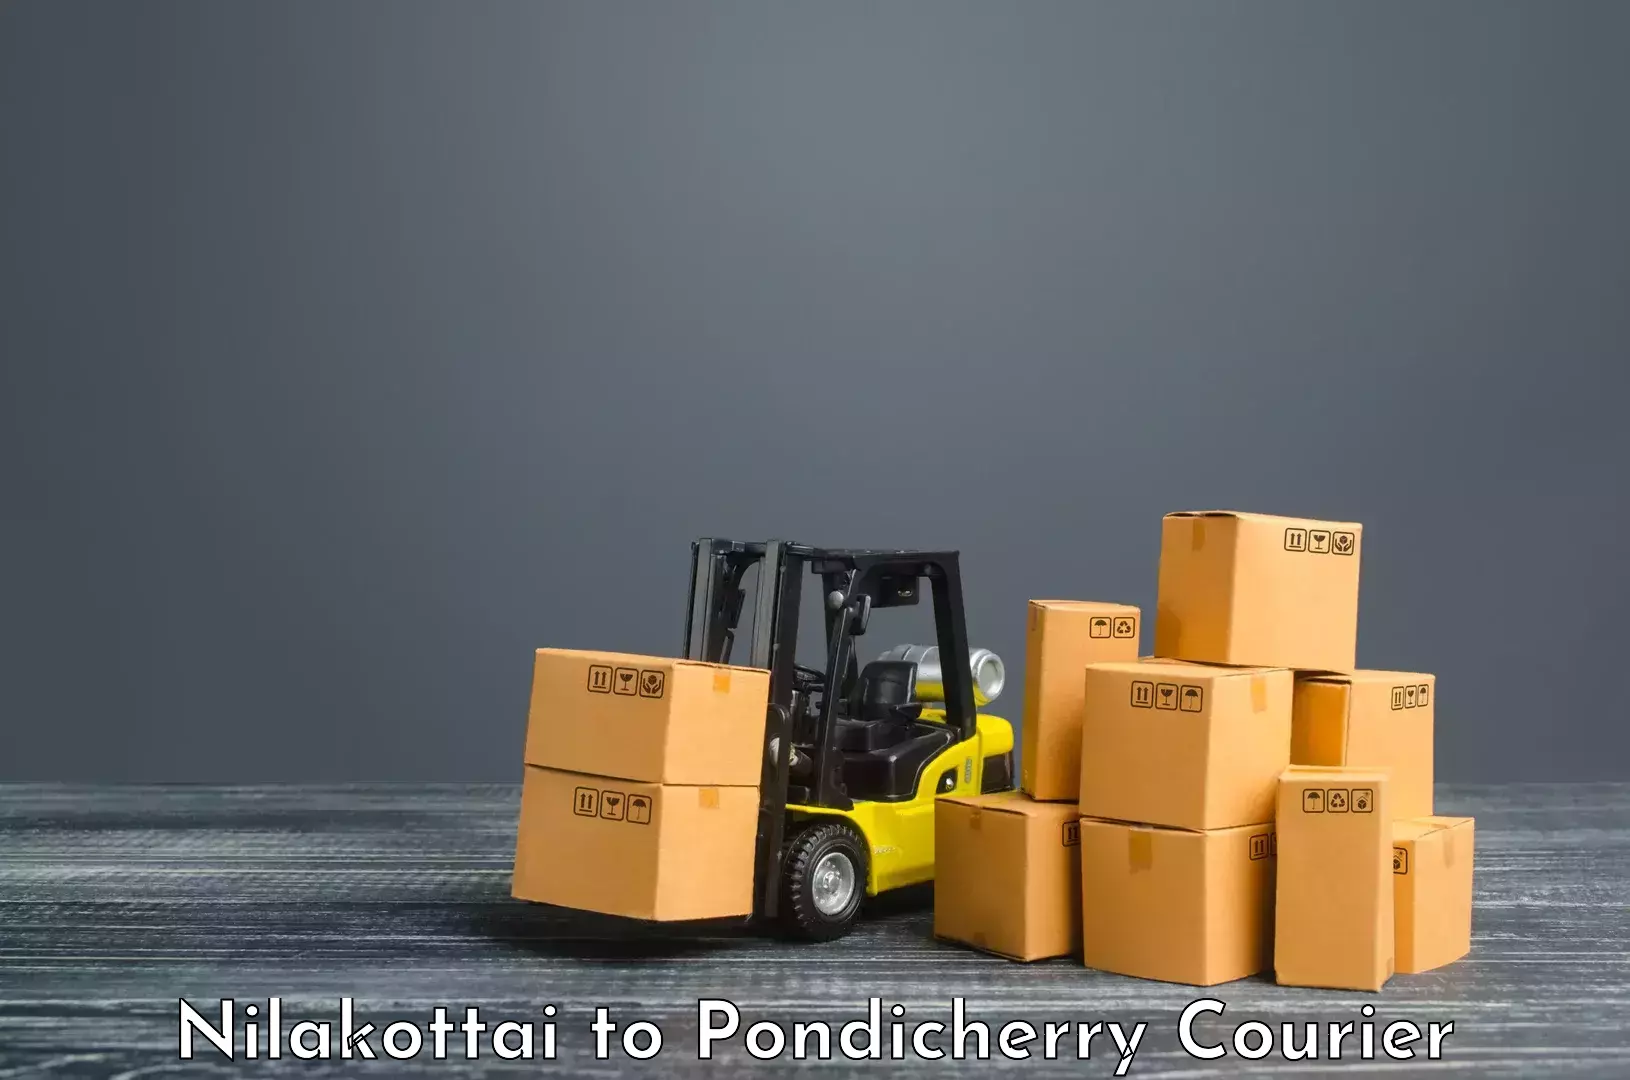 Reliable shipping partners Nilakottai to Pondicherry University